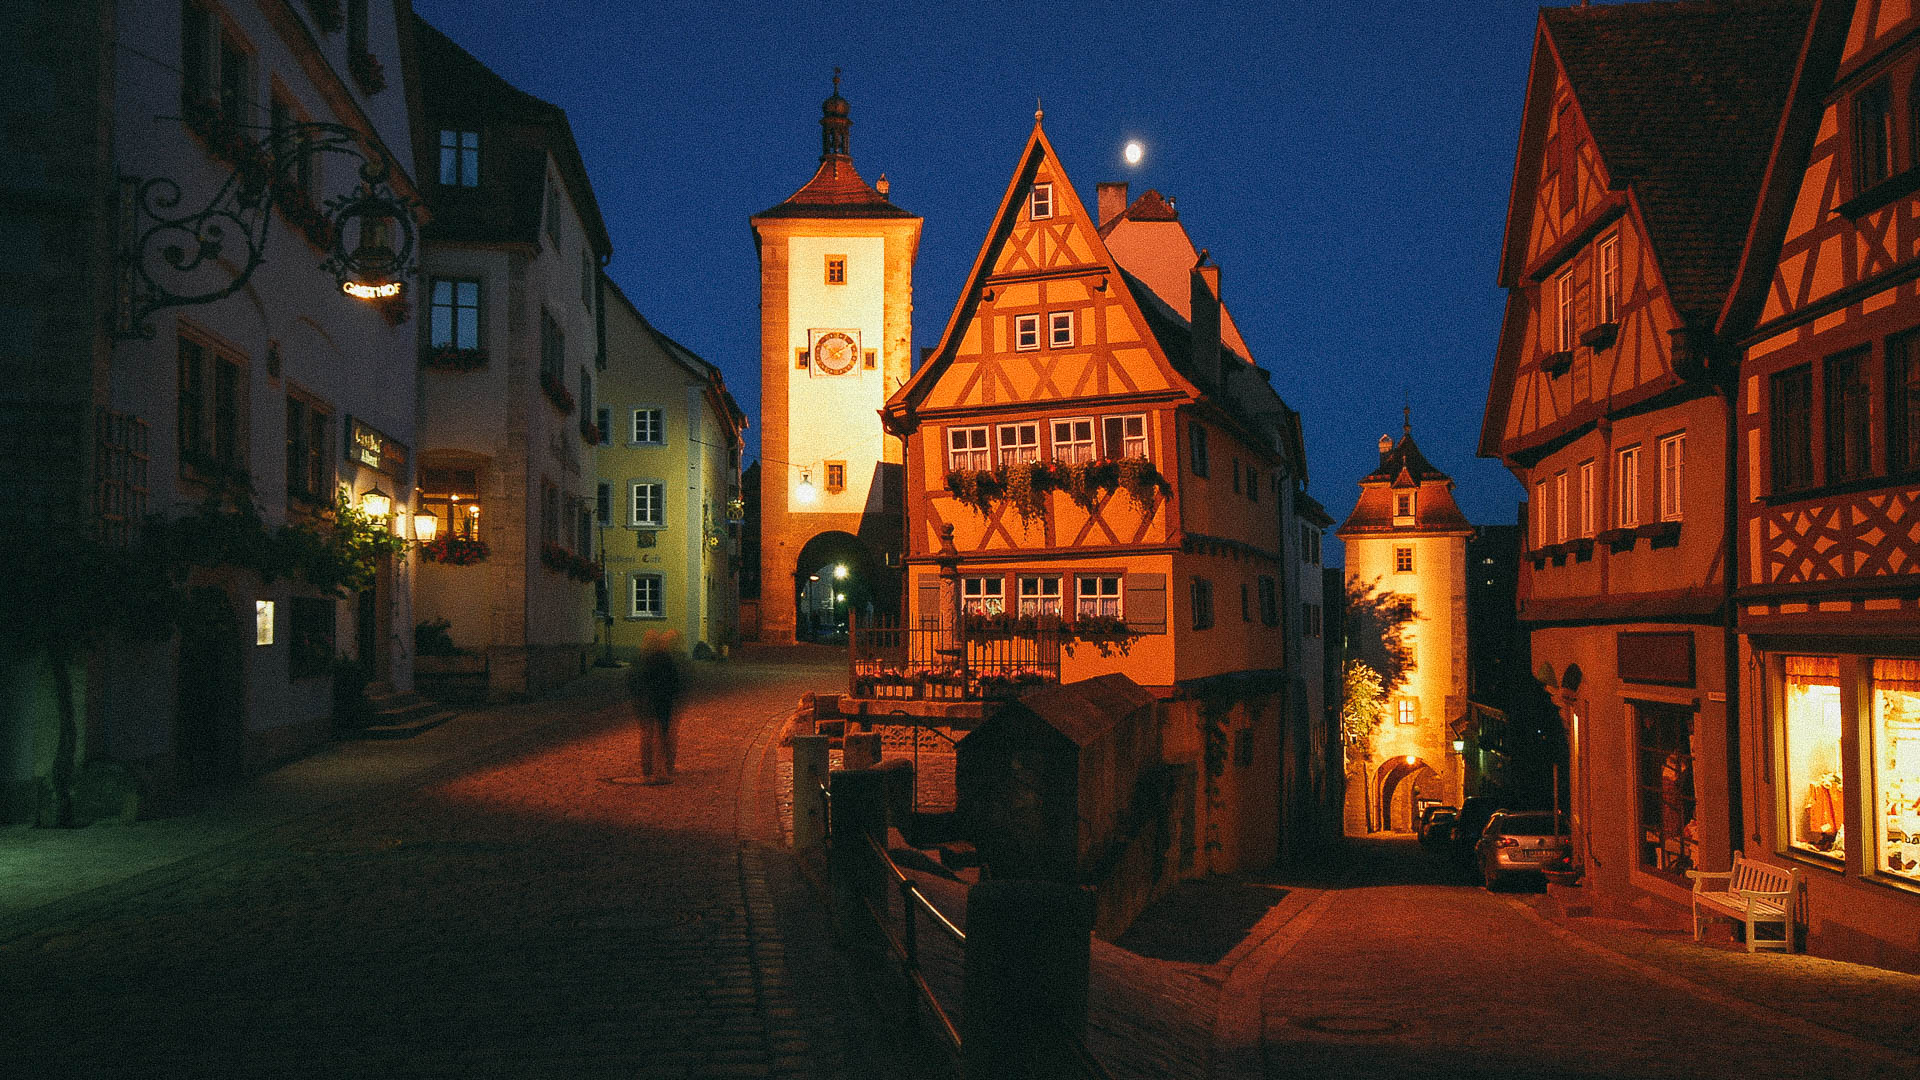 Rothenburg, Germany|klyuen travel photography